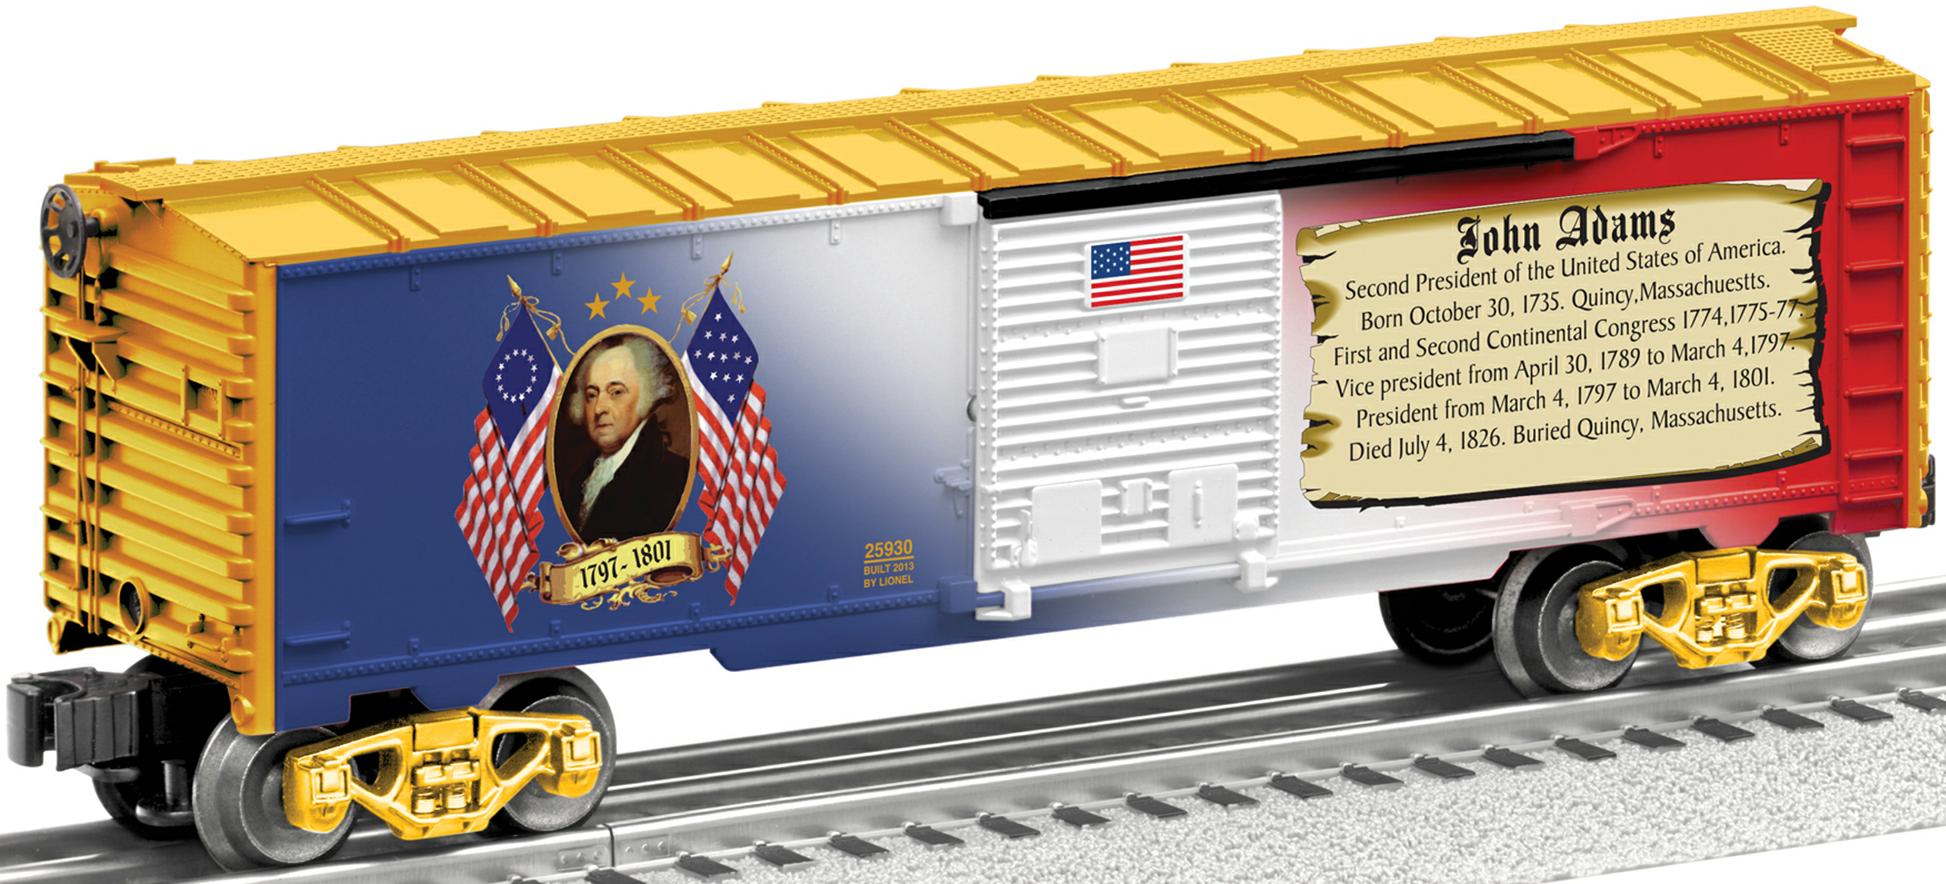 John Adams boxcar image